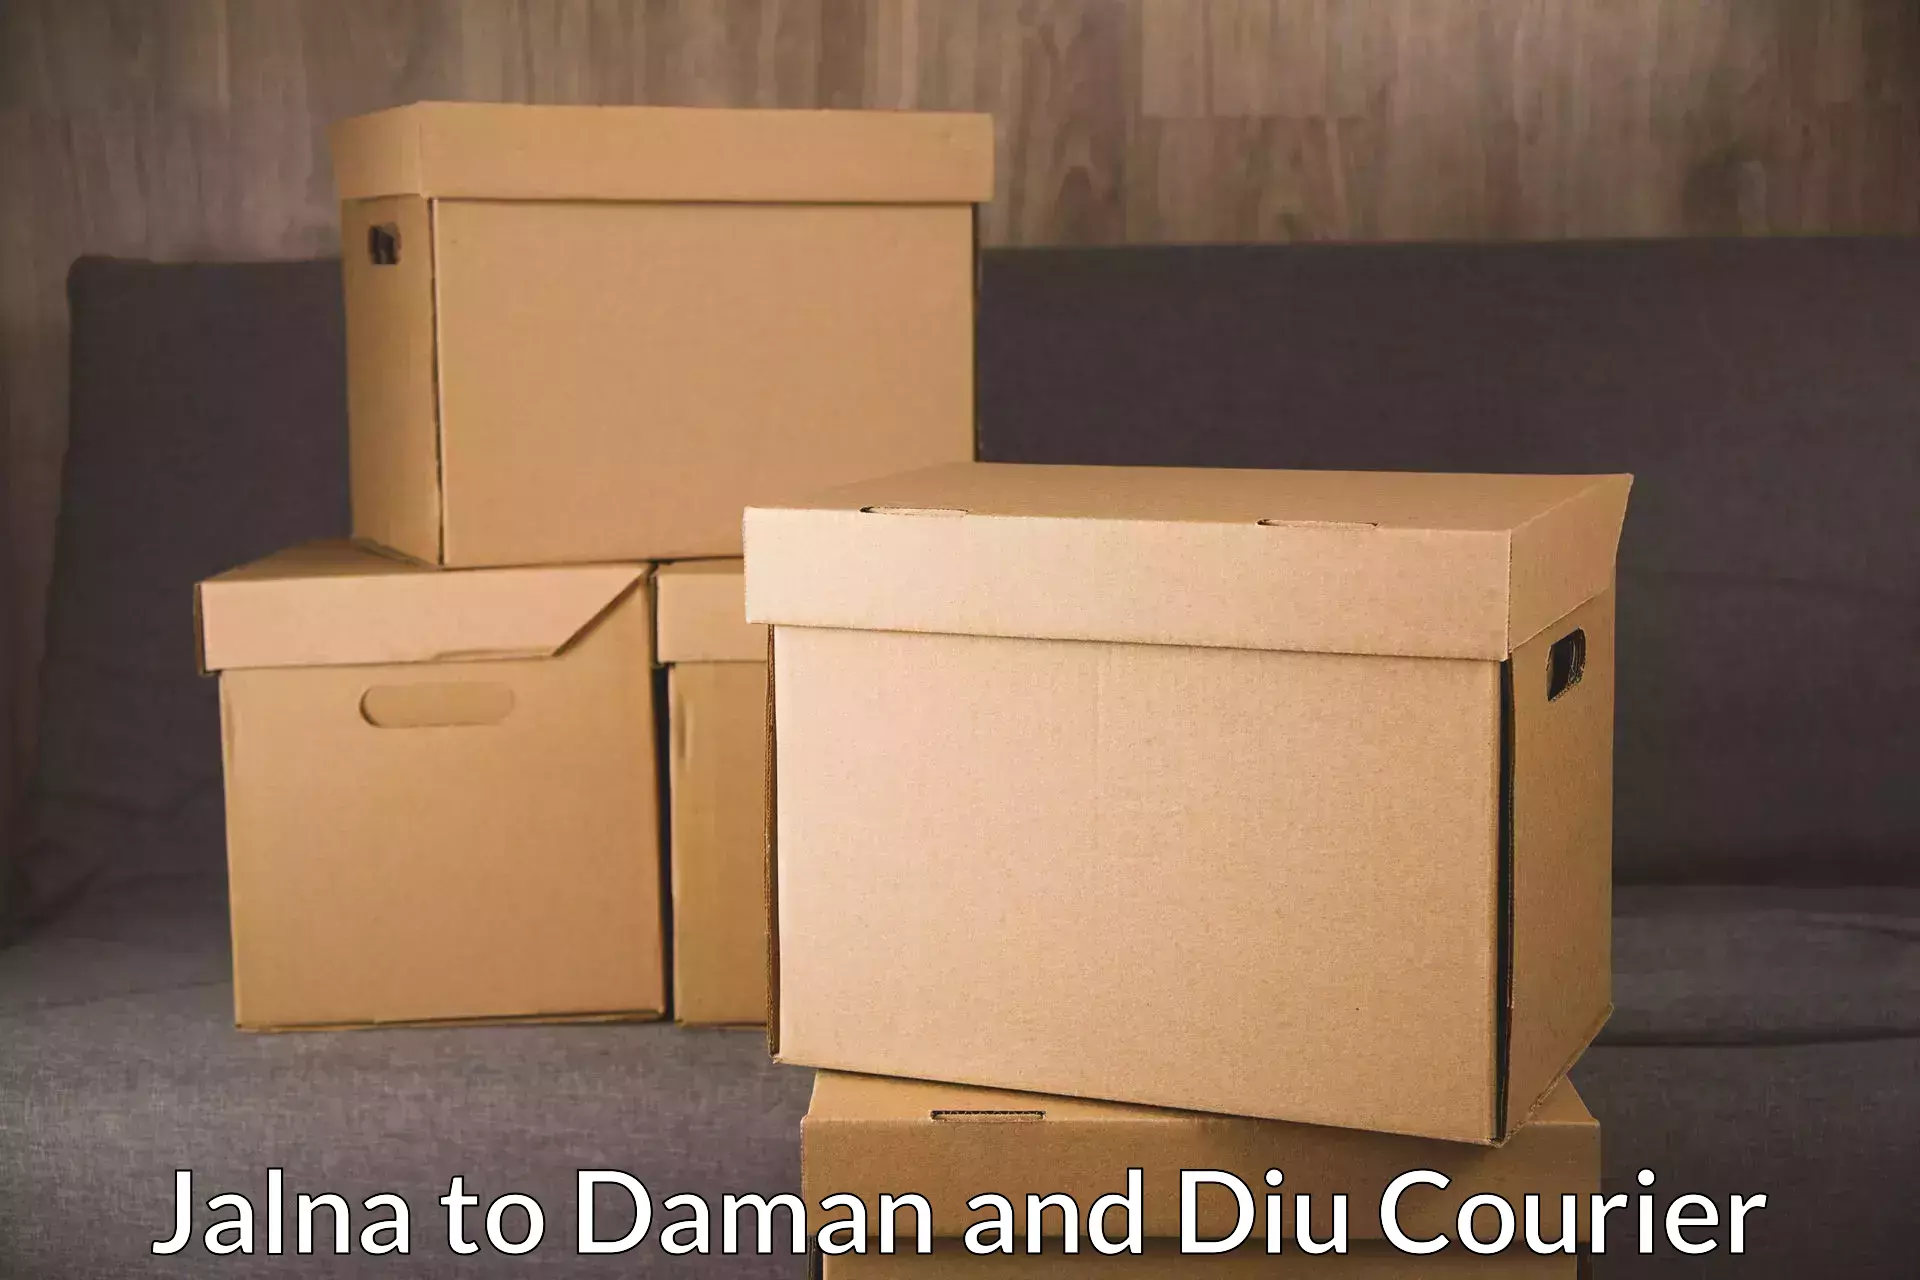 Doorstep delivery service Jalna to Daman